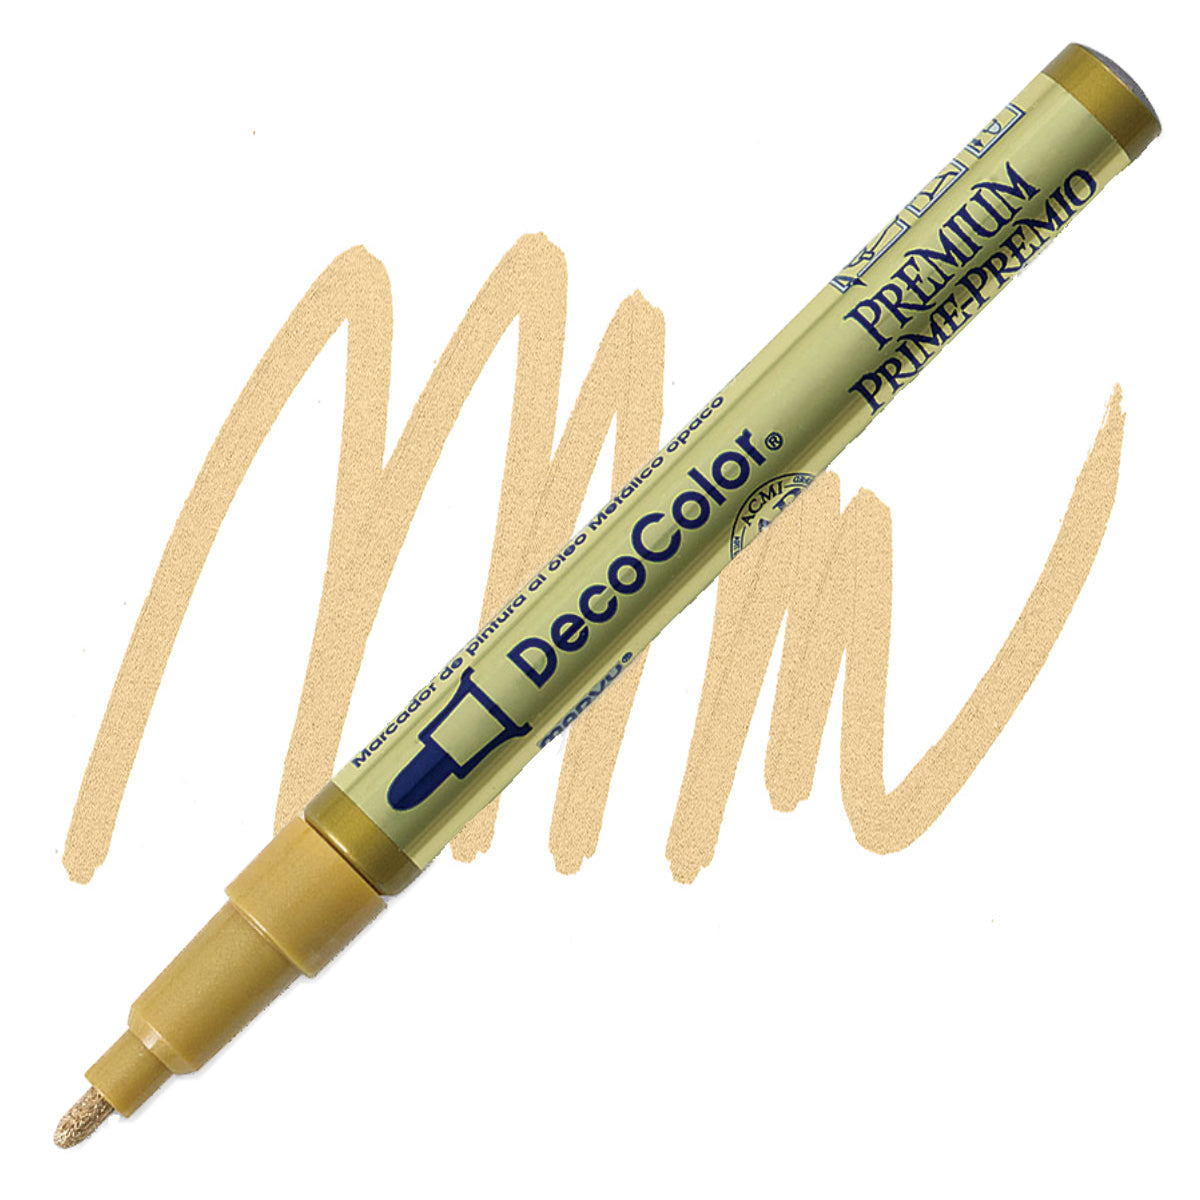 Decocolor Premium Paint Marker, fijne ronde punt